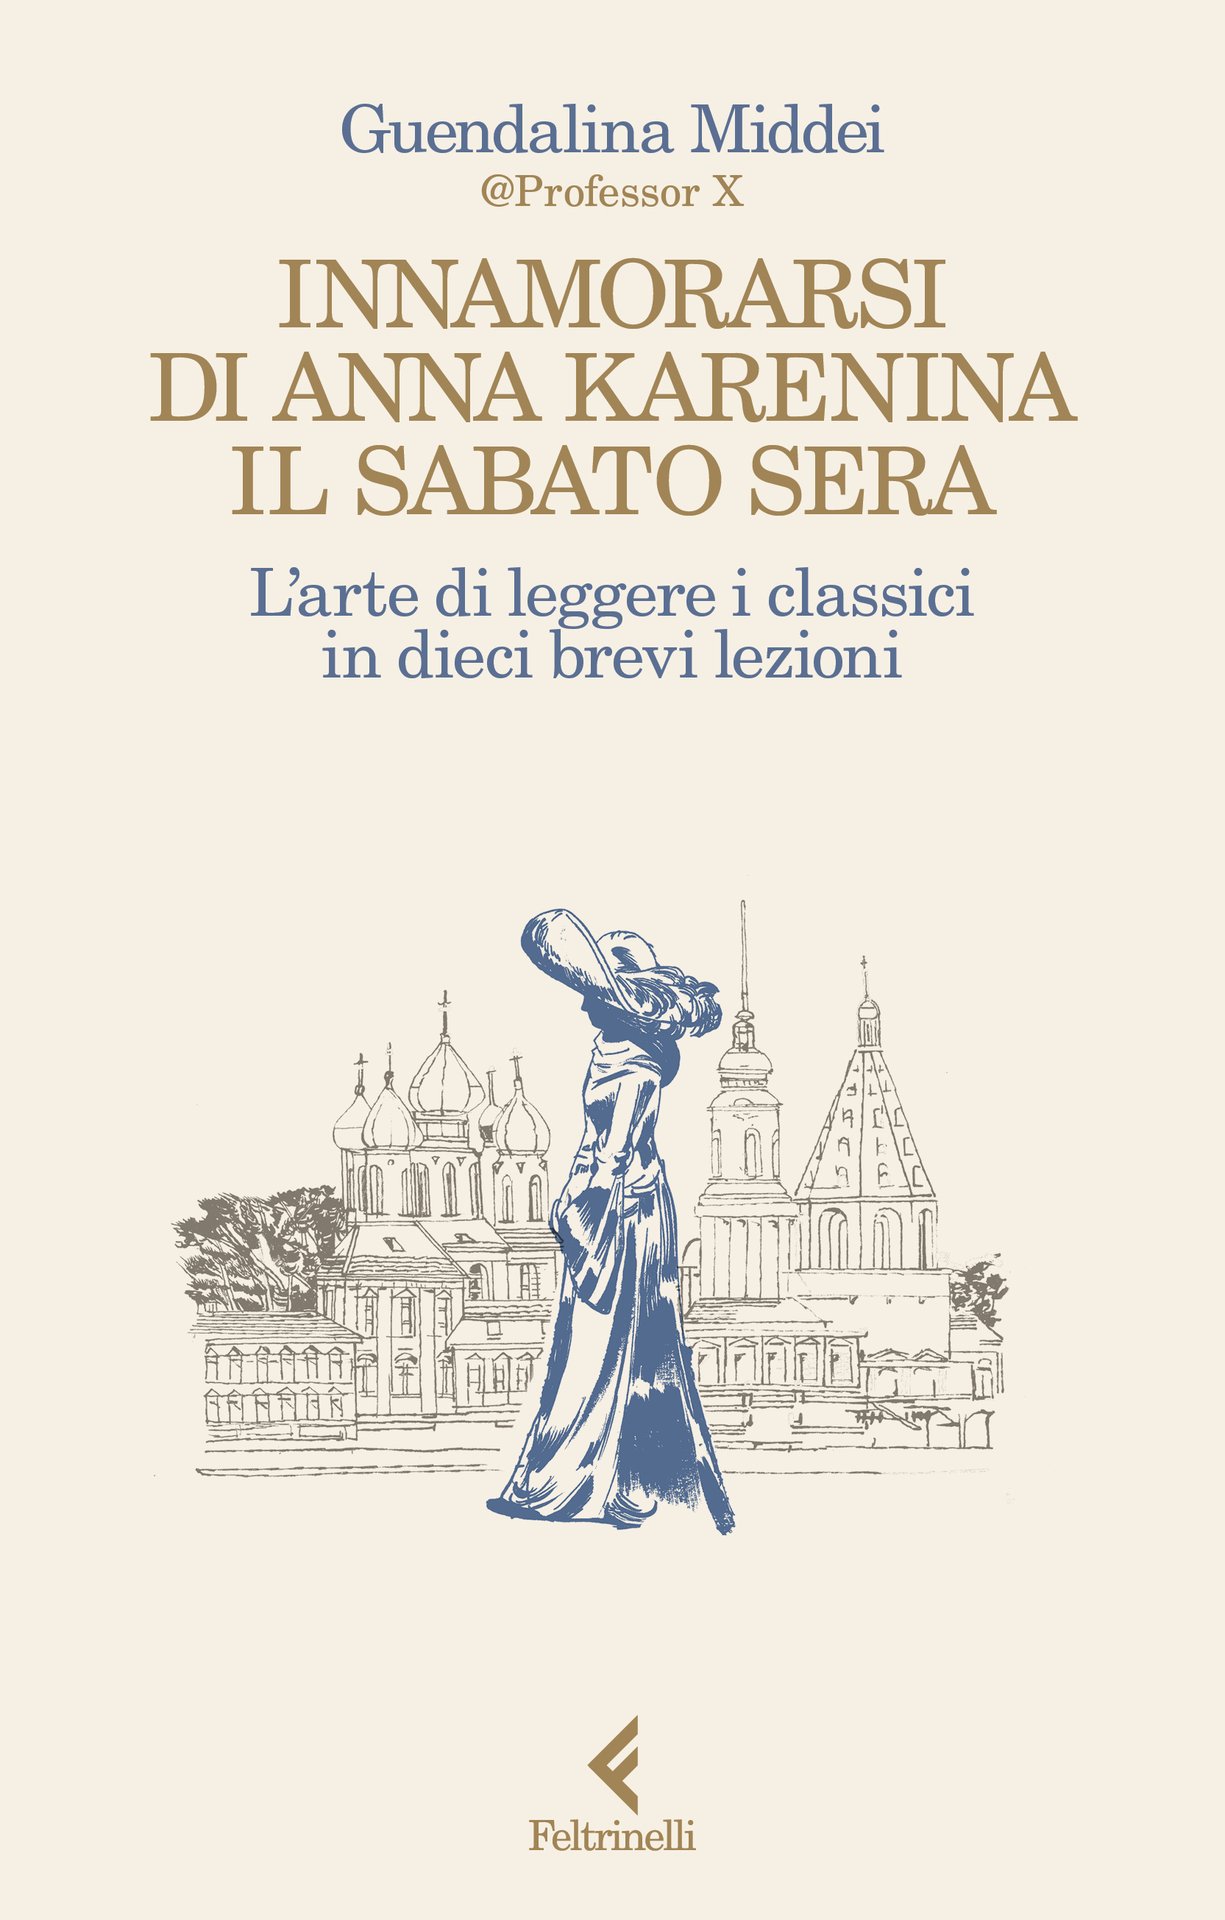 Guendalina Middei presenta "Innamorarsi di Anna Karenina il sabato sera" a Monza, presso Sala Maddalena